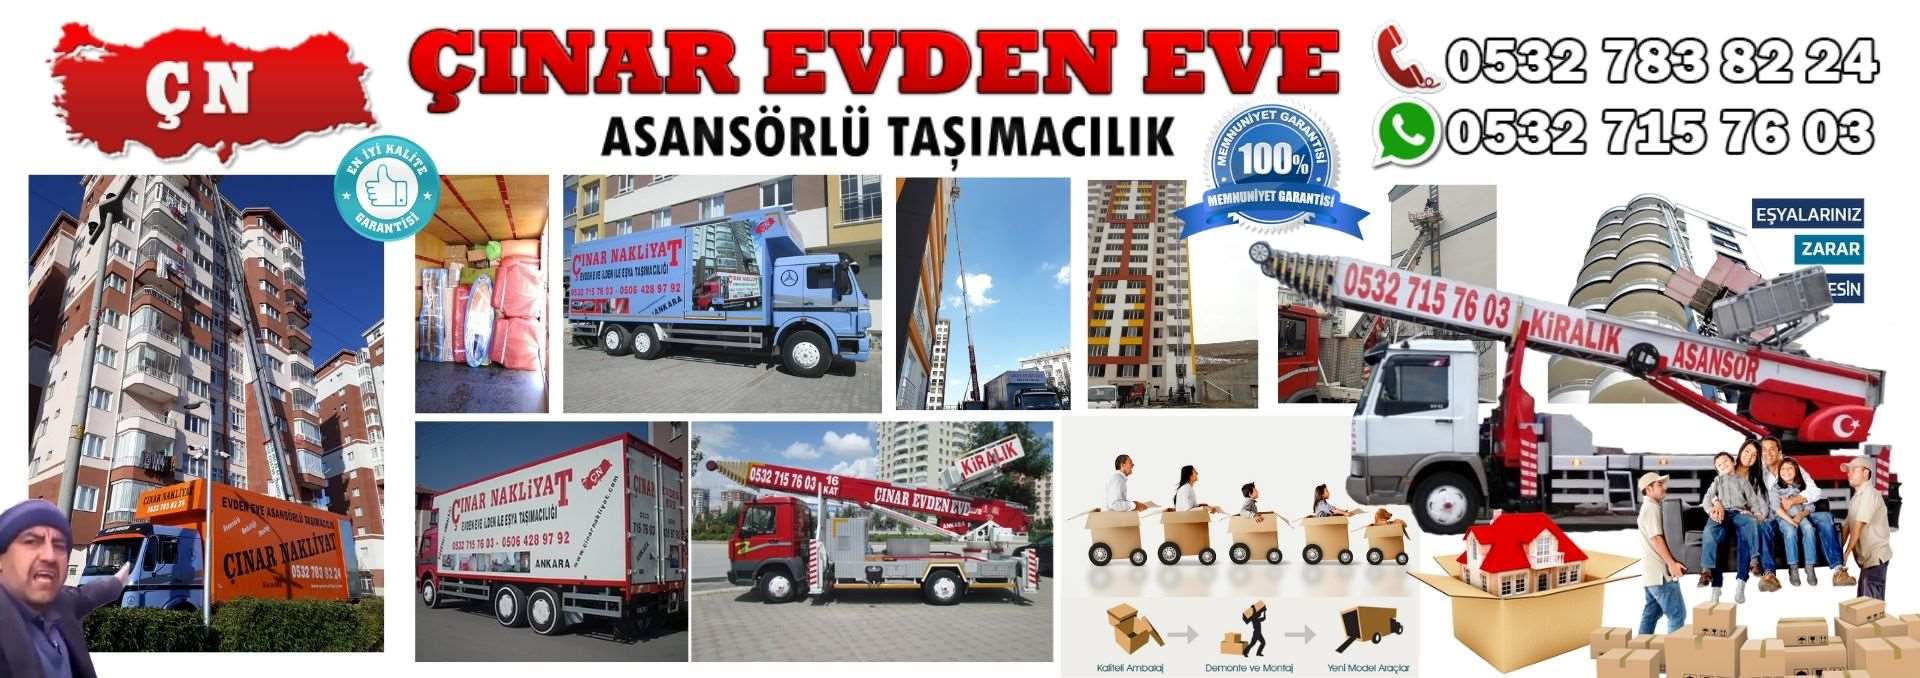 Ankara Mamak Evden Eve Asansörlü Ev Eşyası Taşıma 0532 715 76 03